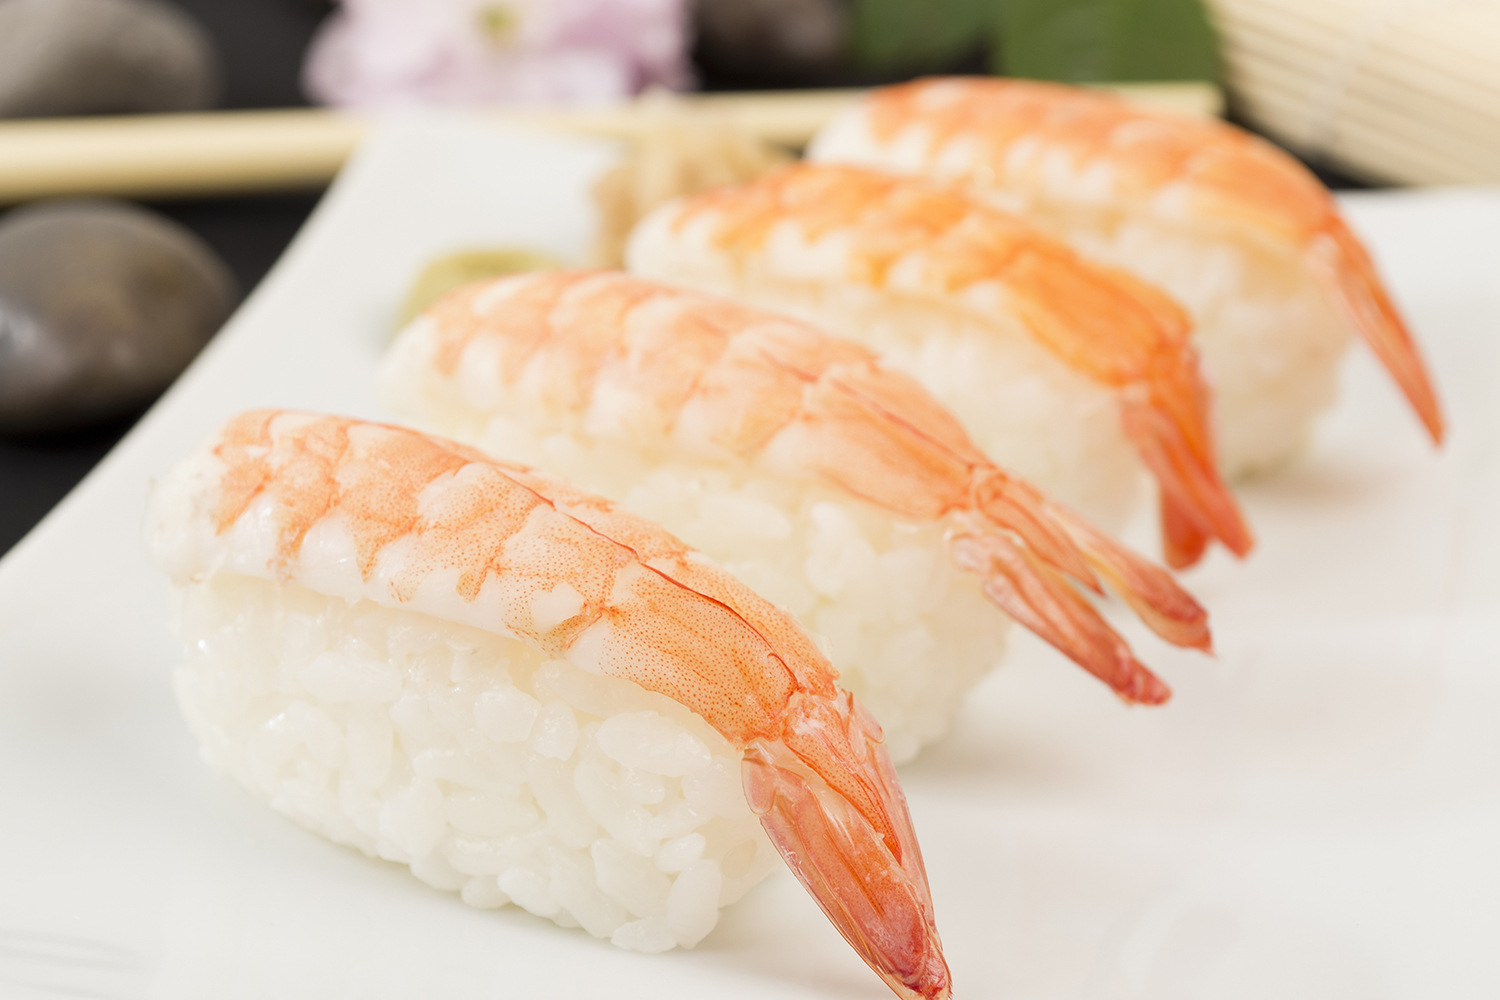 Ebi Nigiri Sushi | Traditional Rice Dish From Japan